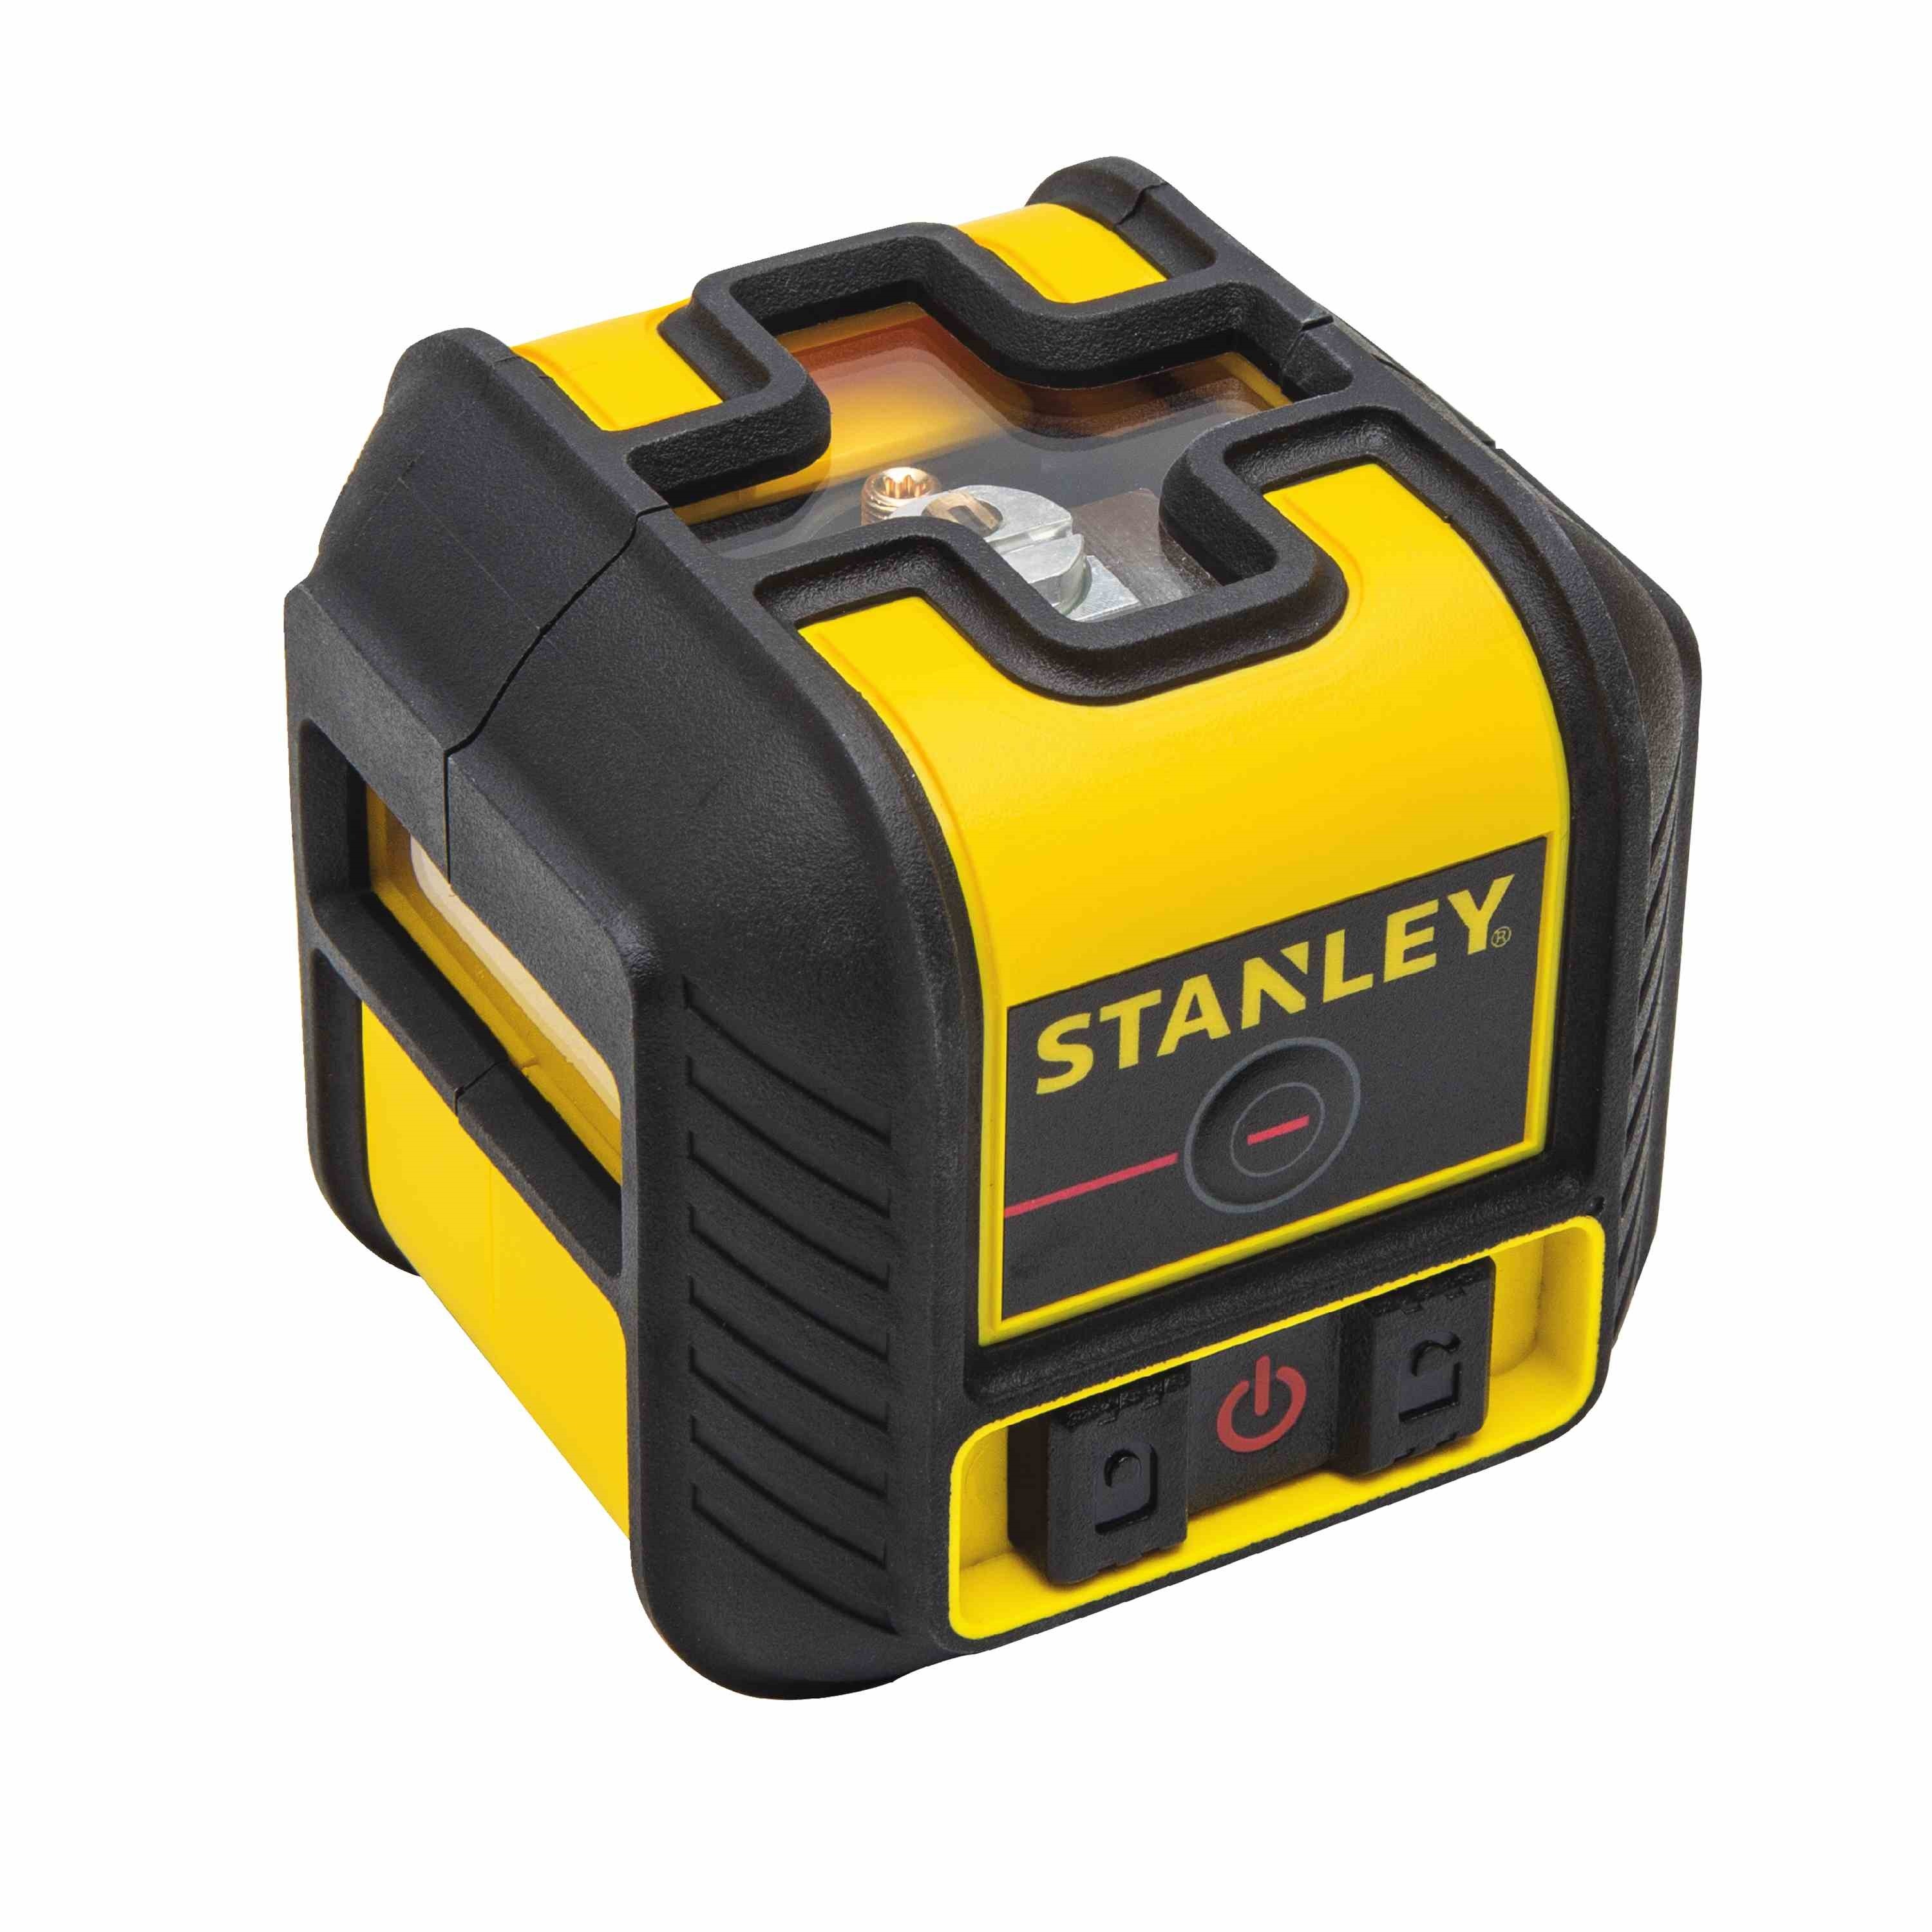 Nivela laser Stanley® STHT77502-1 Cross90 dioda rosie yalco.ro